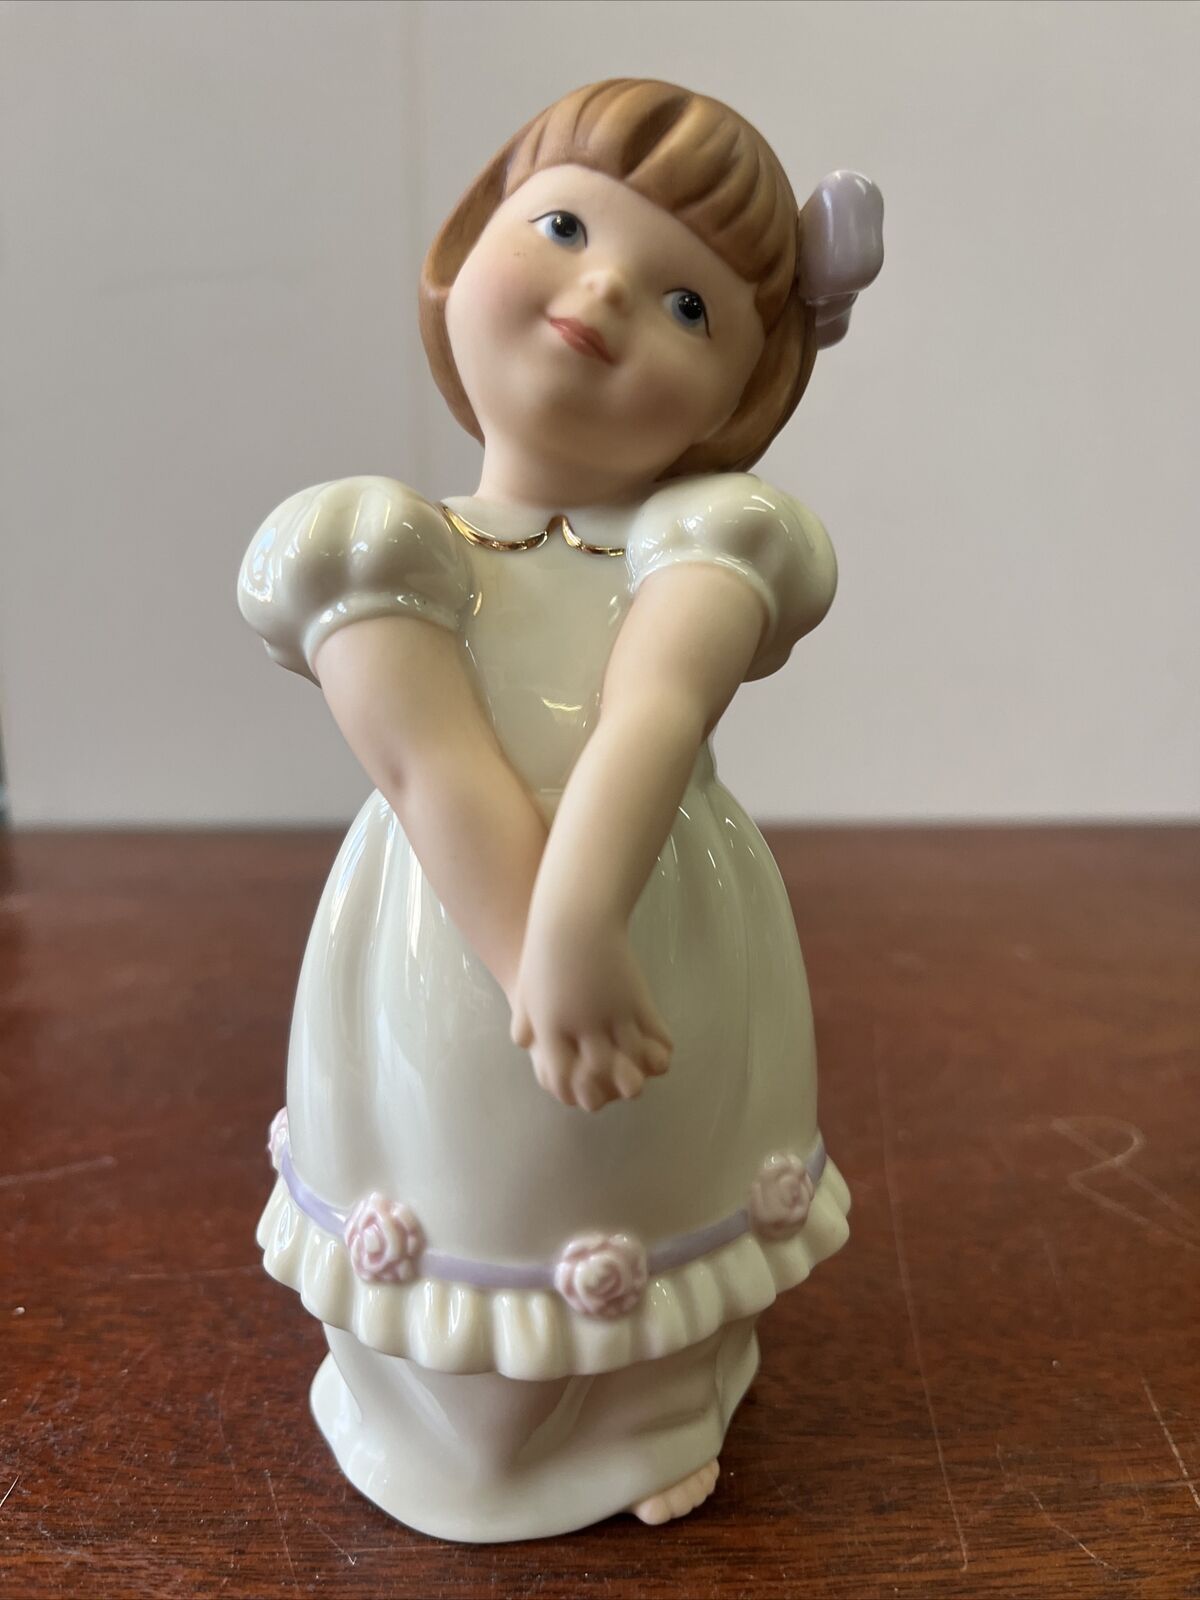 lenox classics porcelain event girl c-17 figurine 6014955  With Original Box